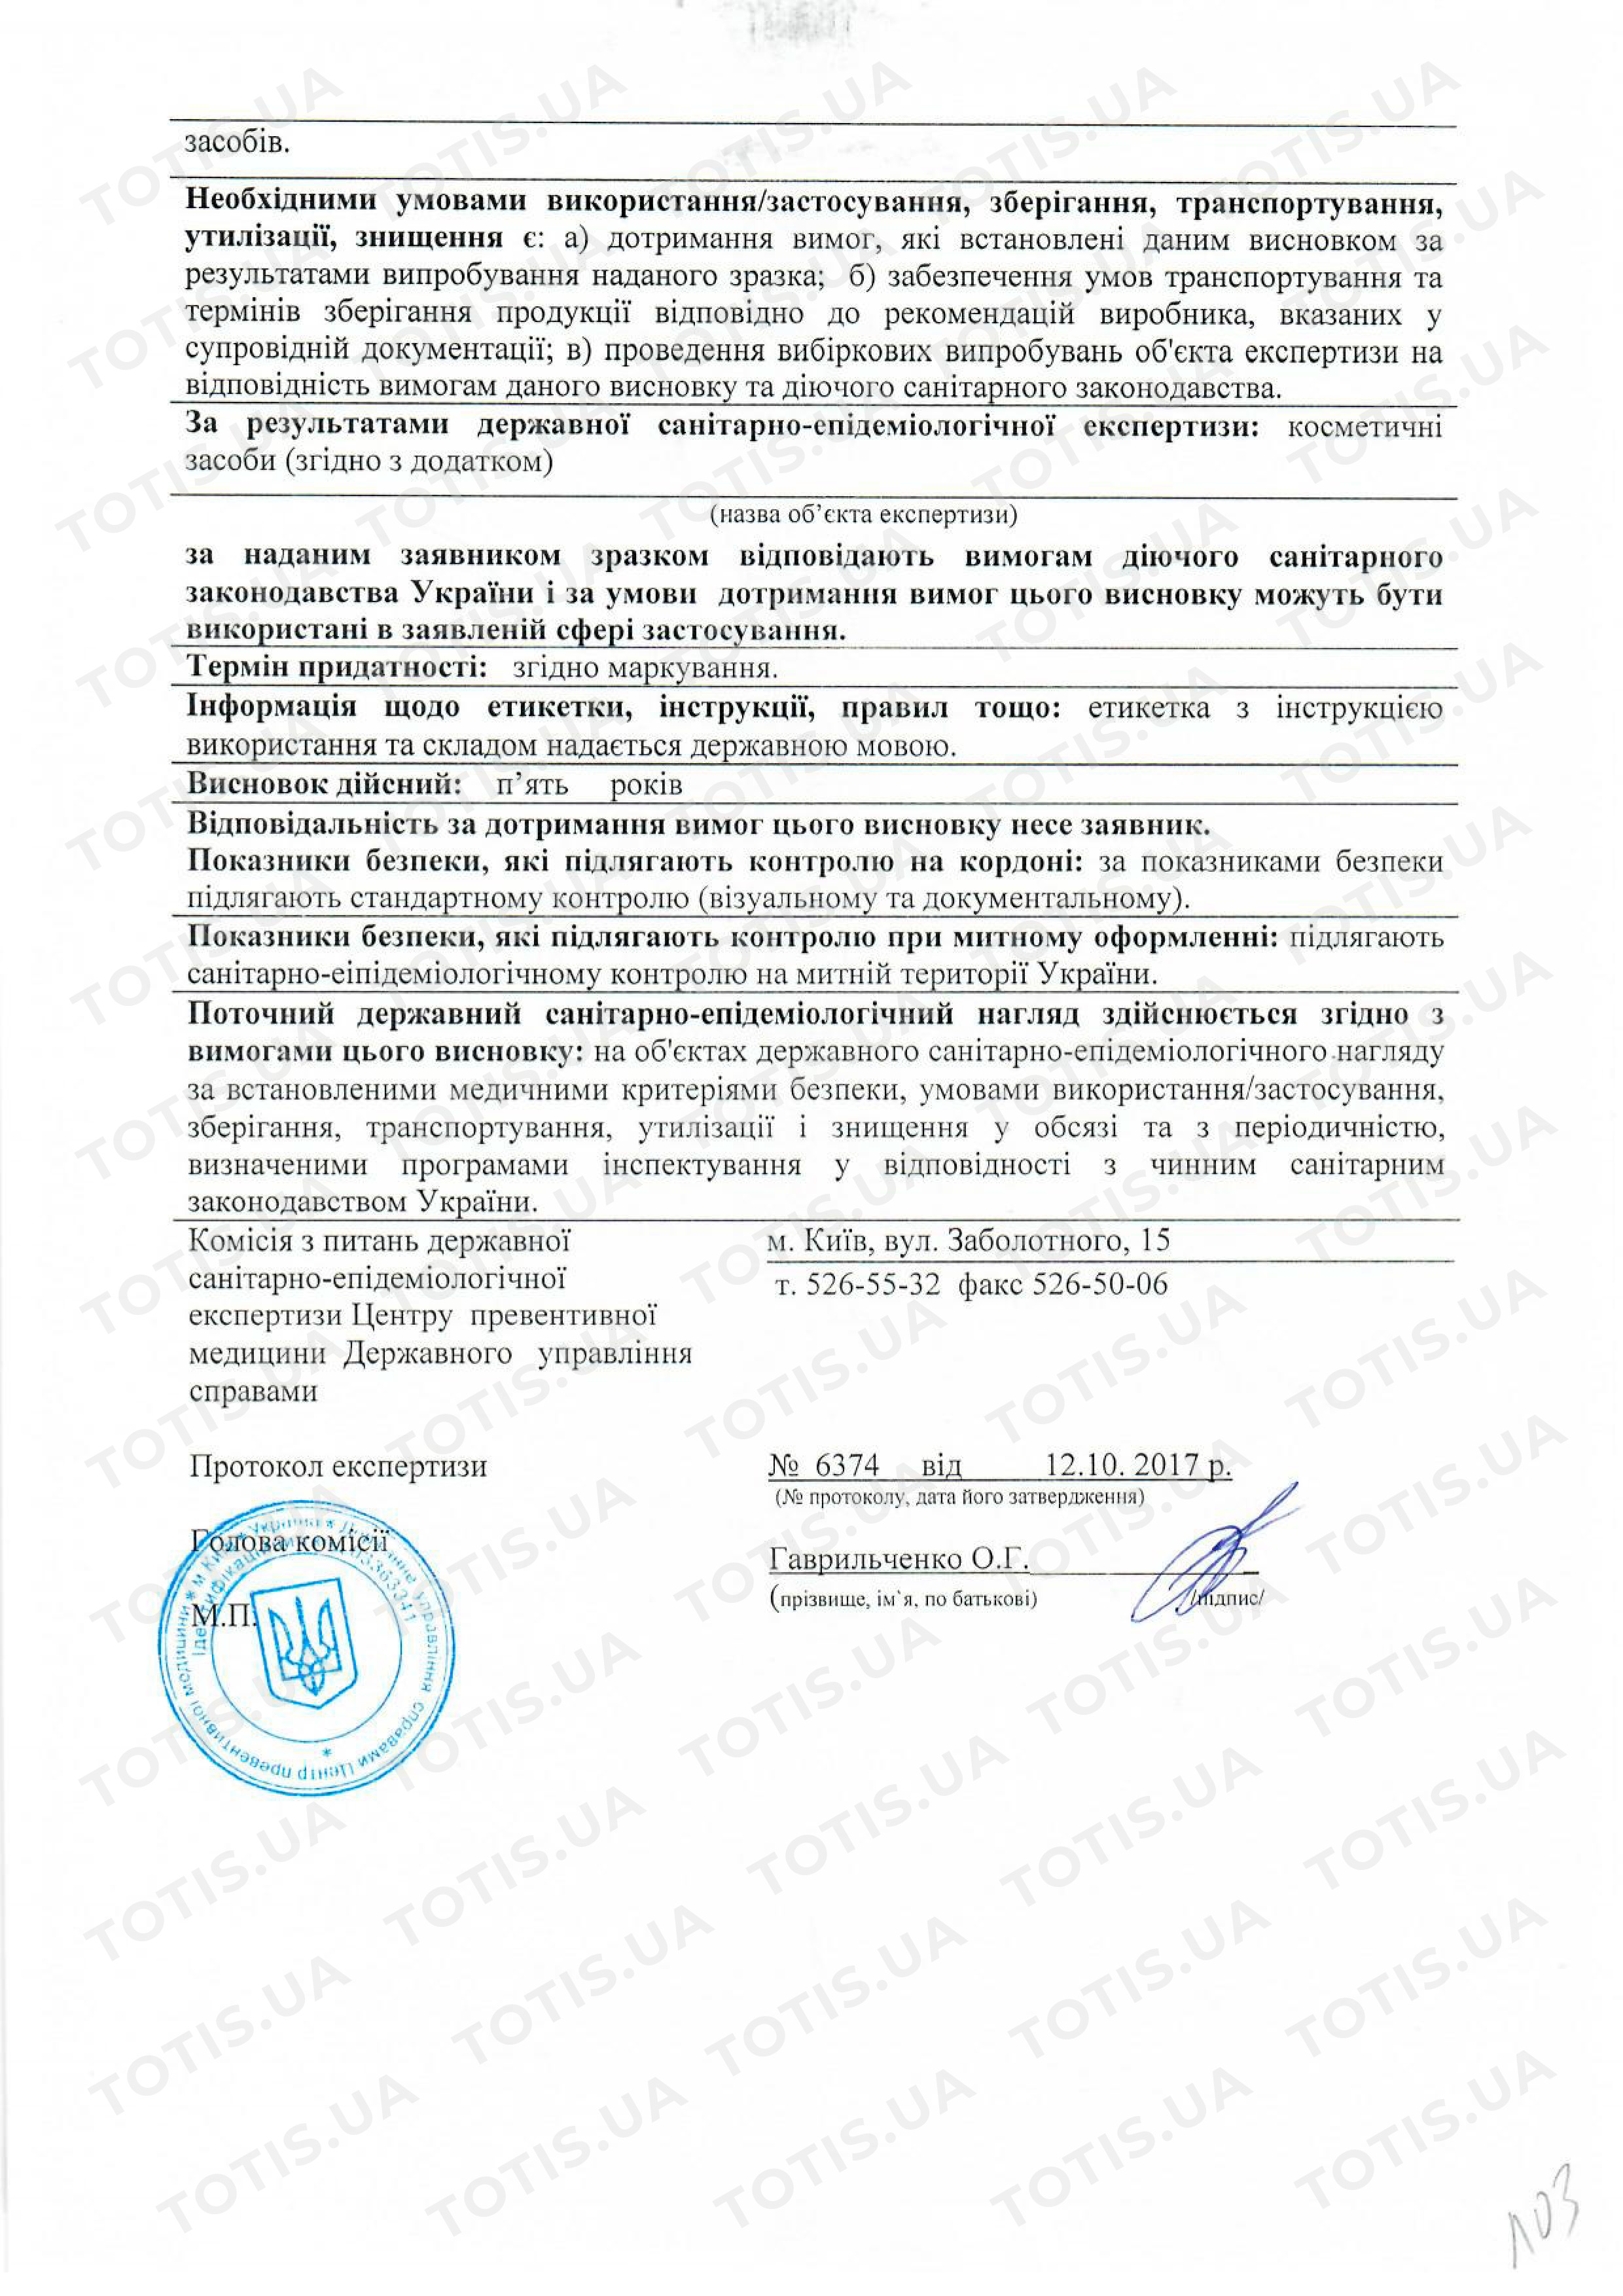 Сертификат препаратов ME Line в Украине